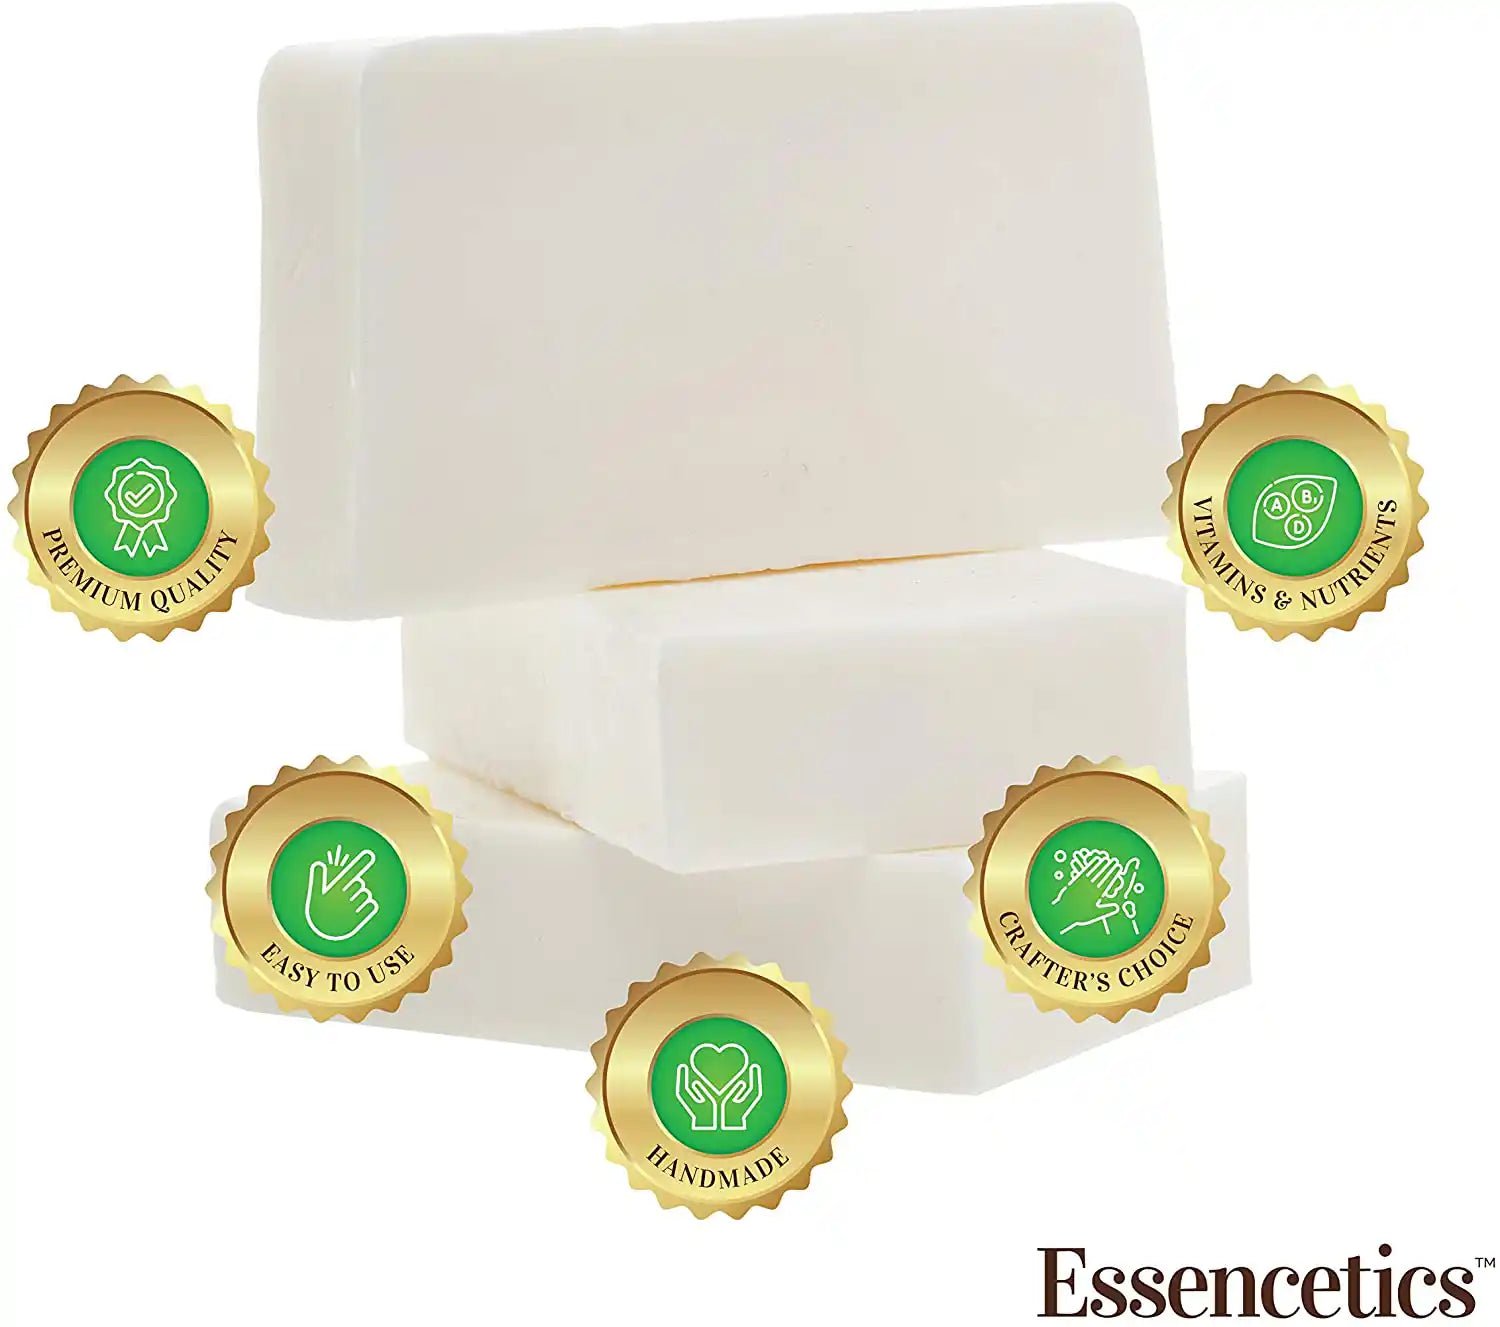 5 Lb Melt &pour Glycerine Soap Base With Goat Milk Premium Best 